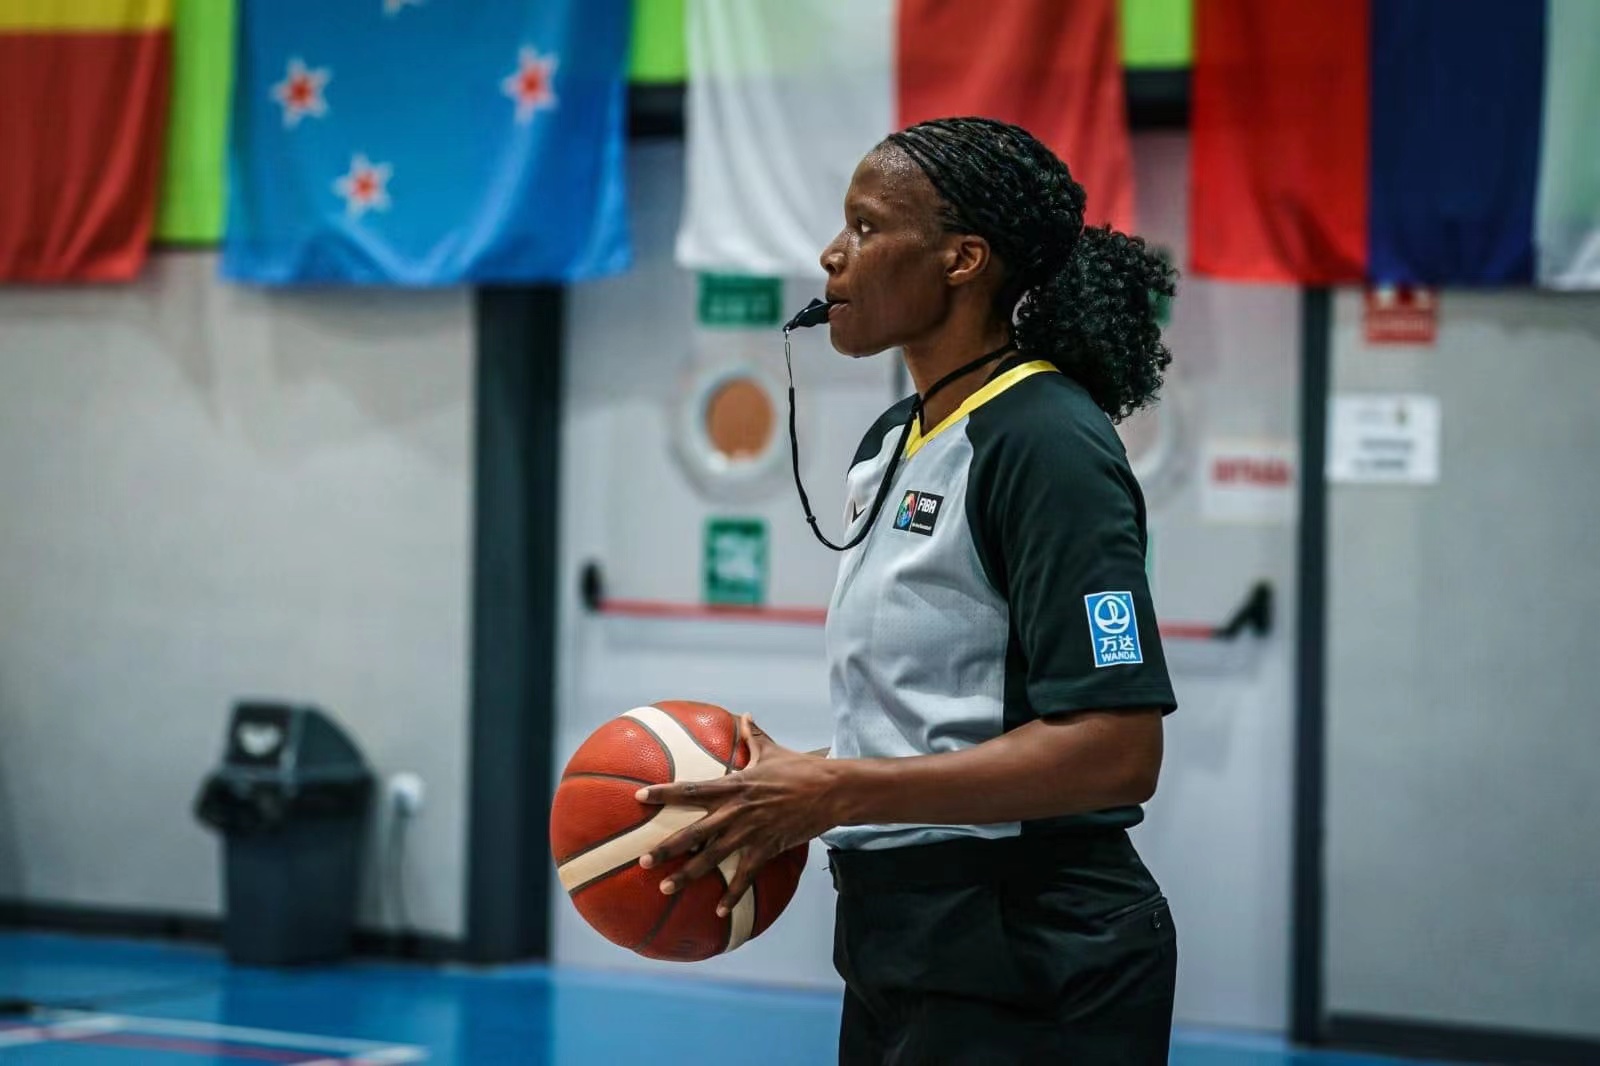 Zim basketball referee Muchenu breaking new grounds at FIBA U17 World Cup